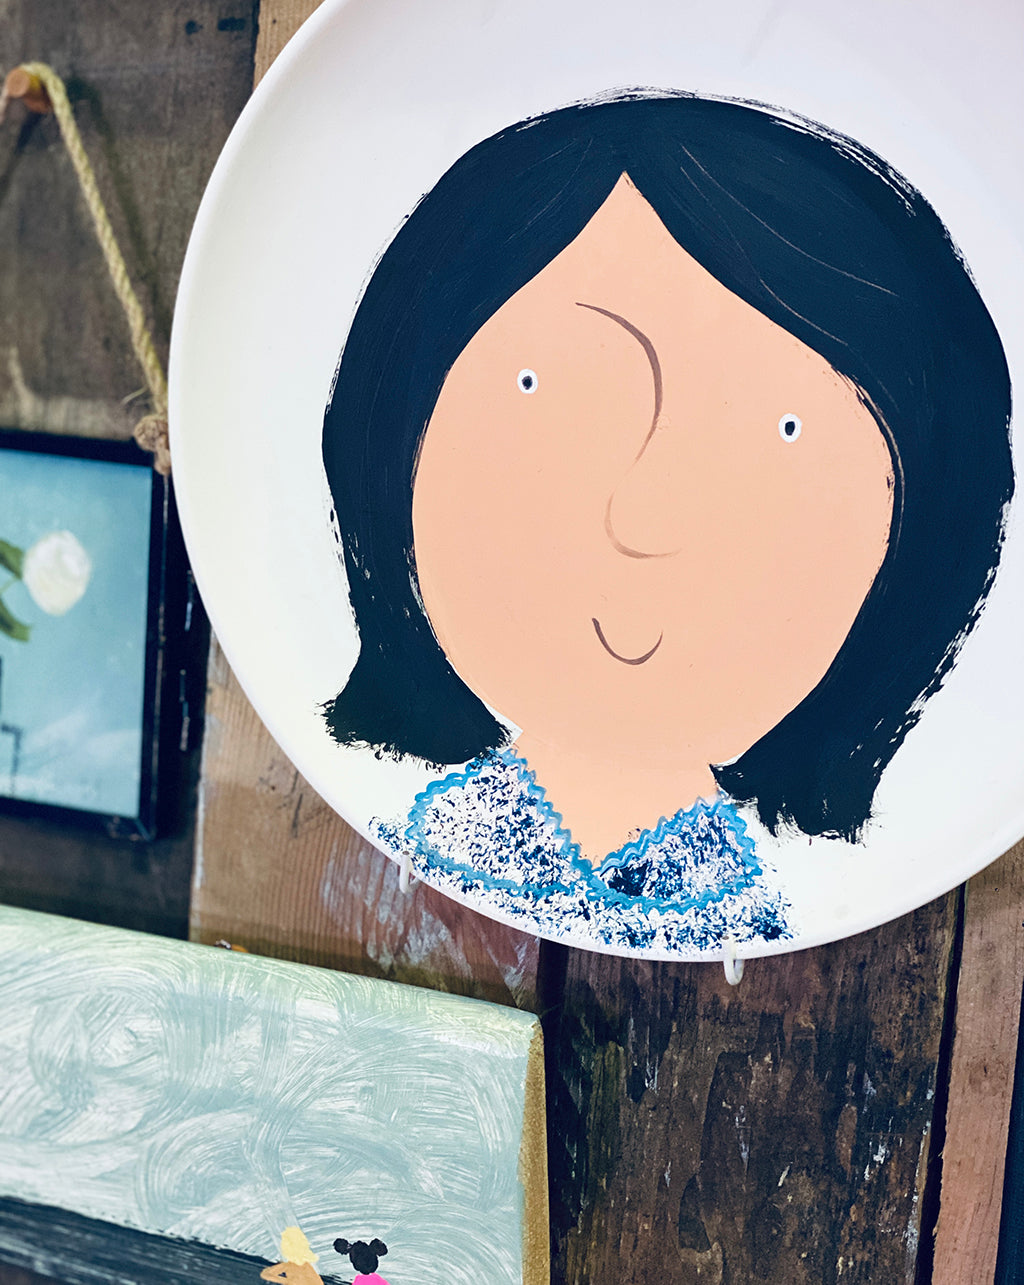 personalised mini-plate portrait